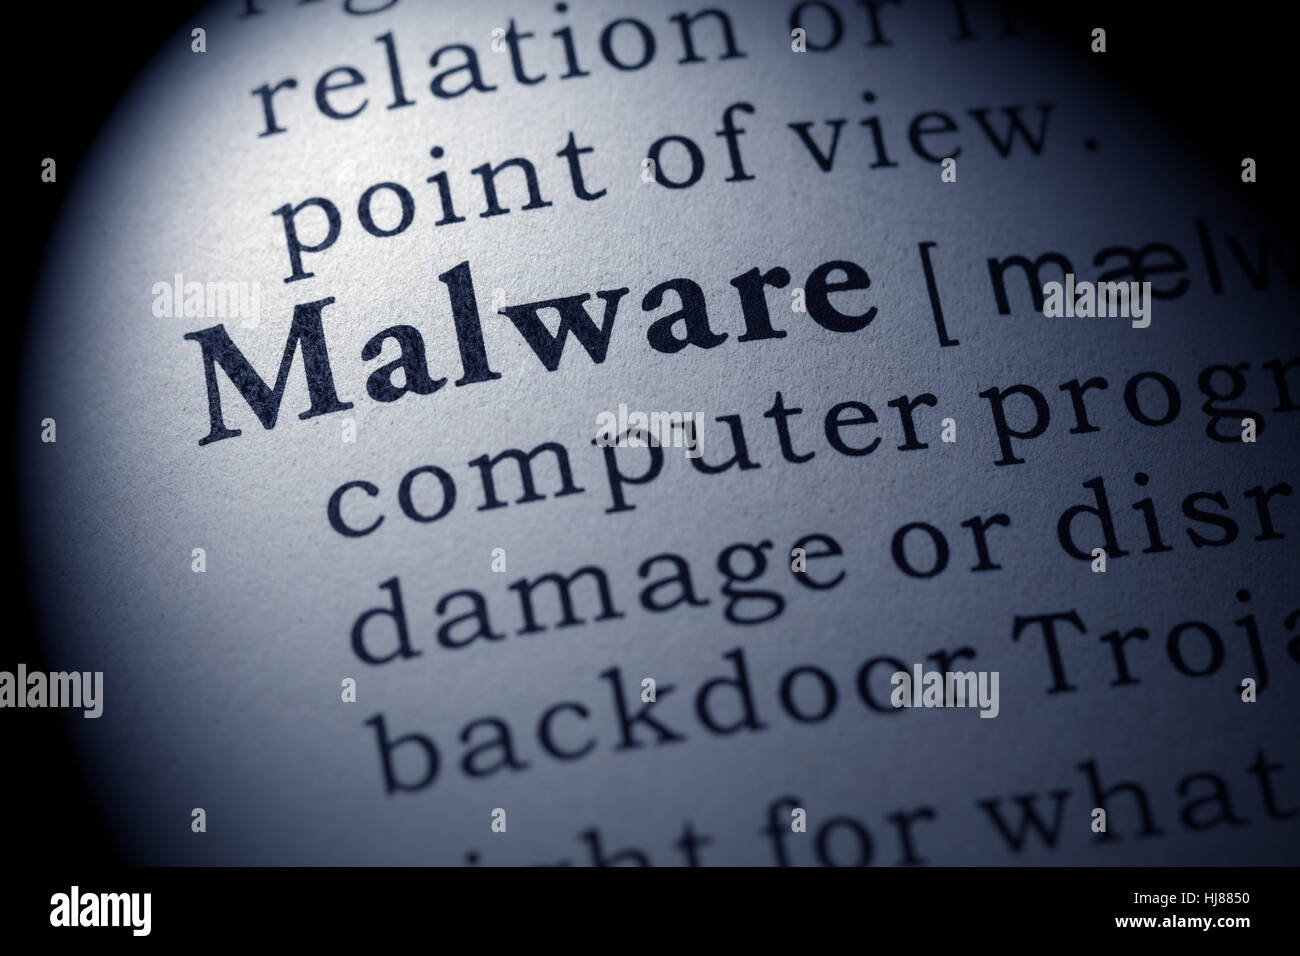 Fake Dizionario, definizione del dizionario della parola Malware. comprendente i principali parole descrittive. Foto Stock